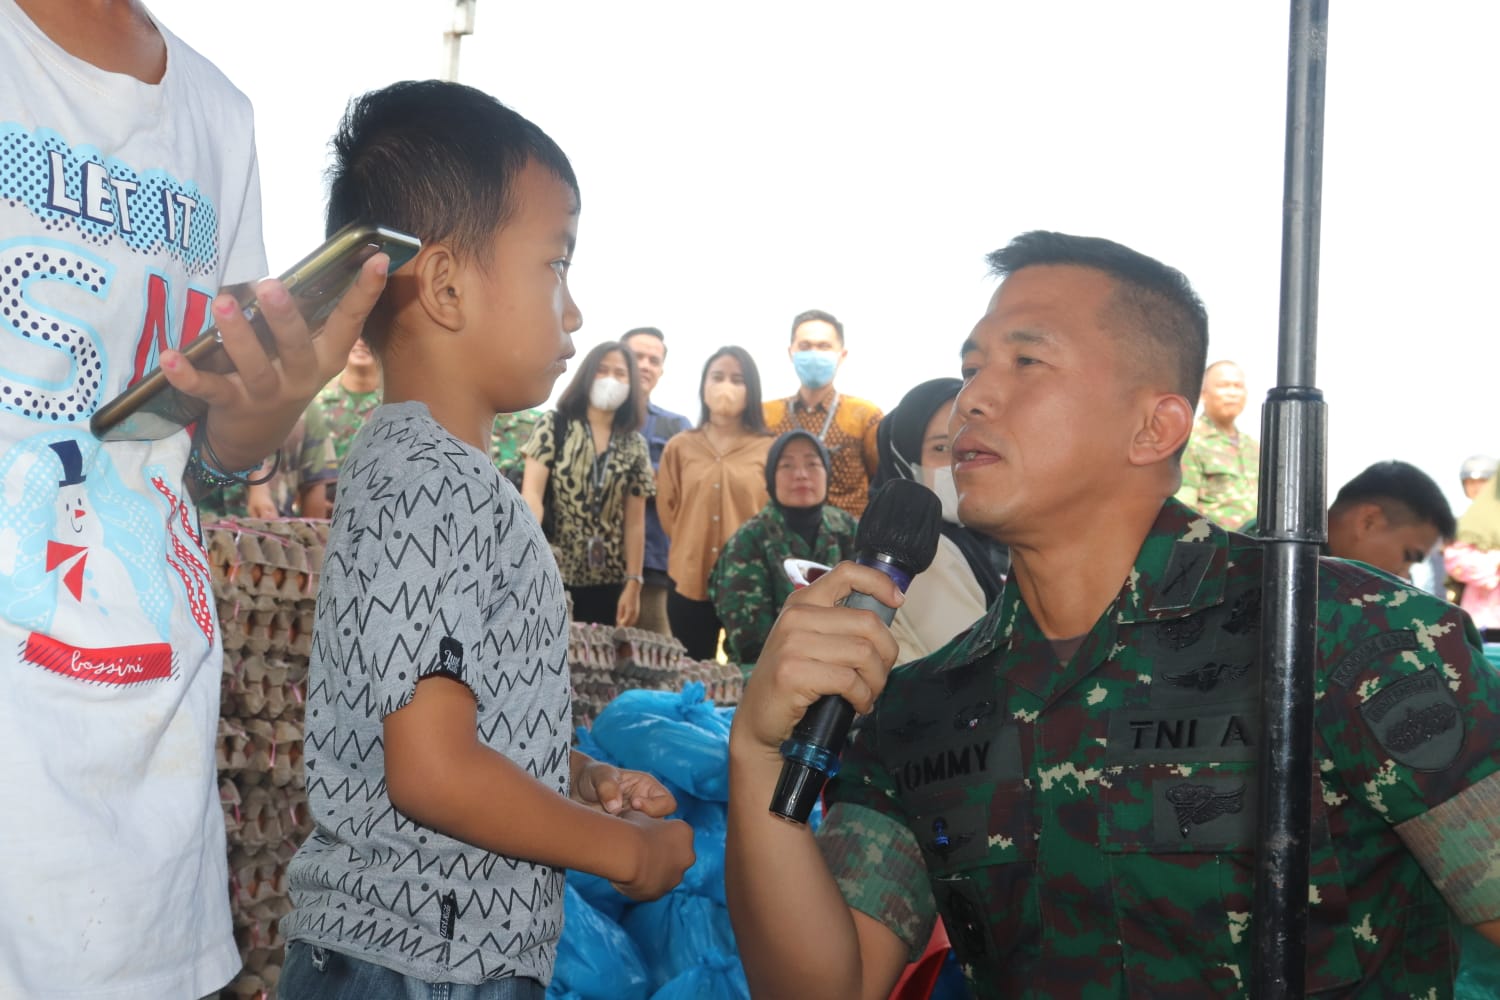 Dandim 0315 Kolonel Inf Tommy Anderson, M. PICT, saat Berikan Kuis Seputar Pancasila Kepada Anak - anak saat Gelar pasar Murah di Bintan Jum'at (14/04/23)/f.dok.Pendim.